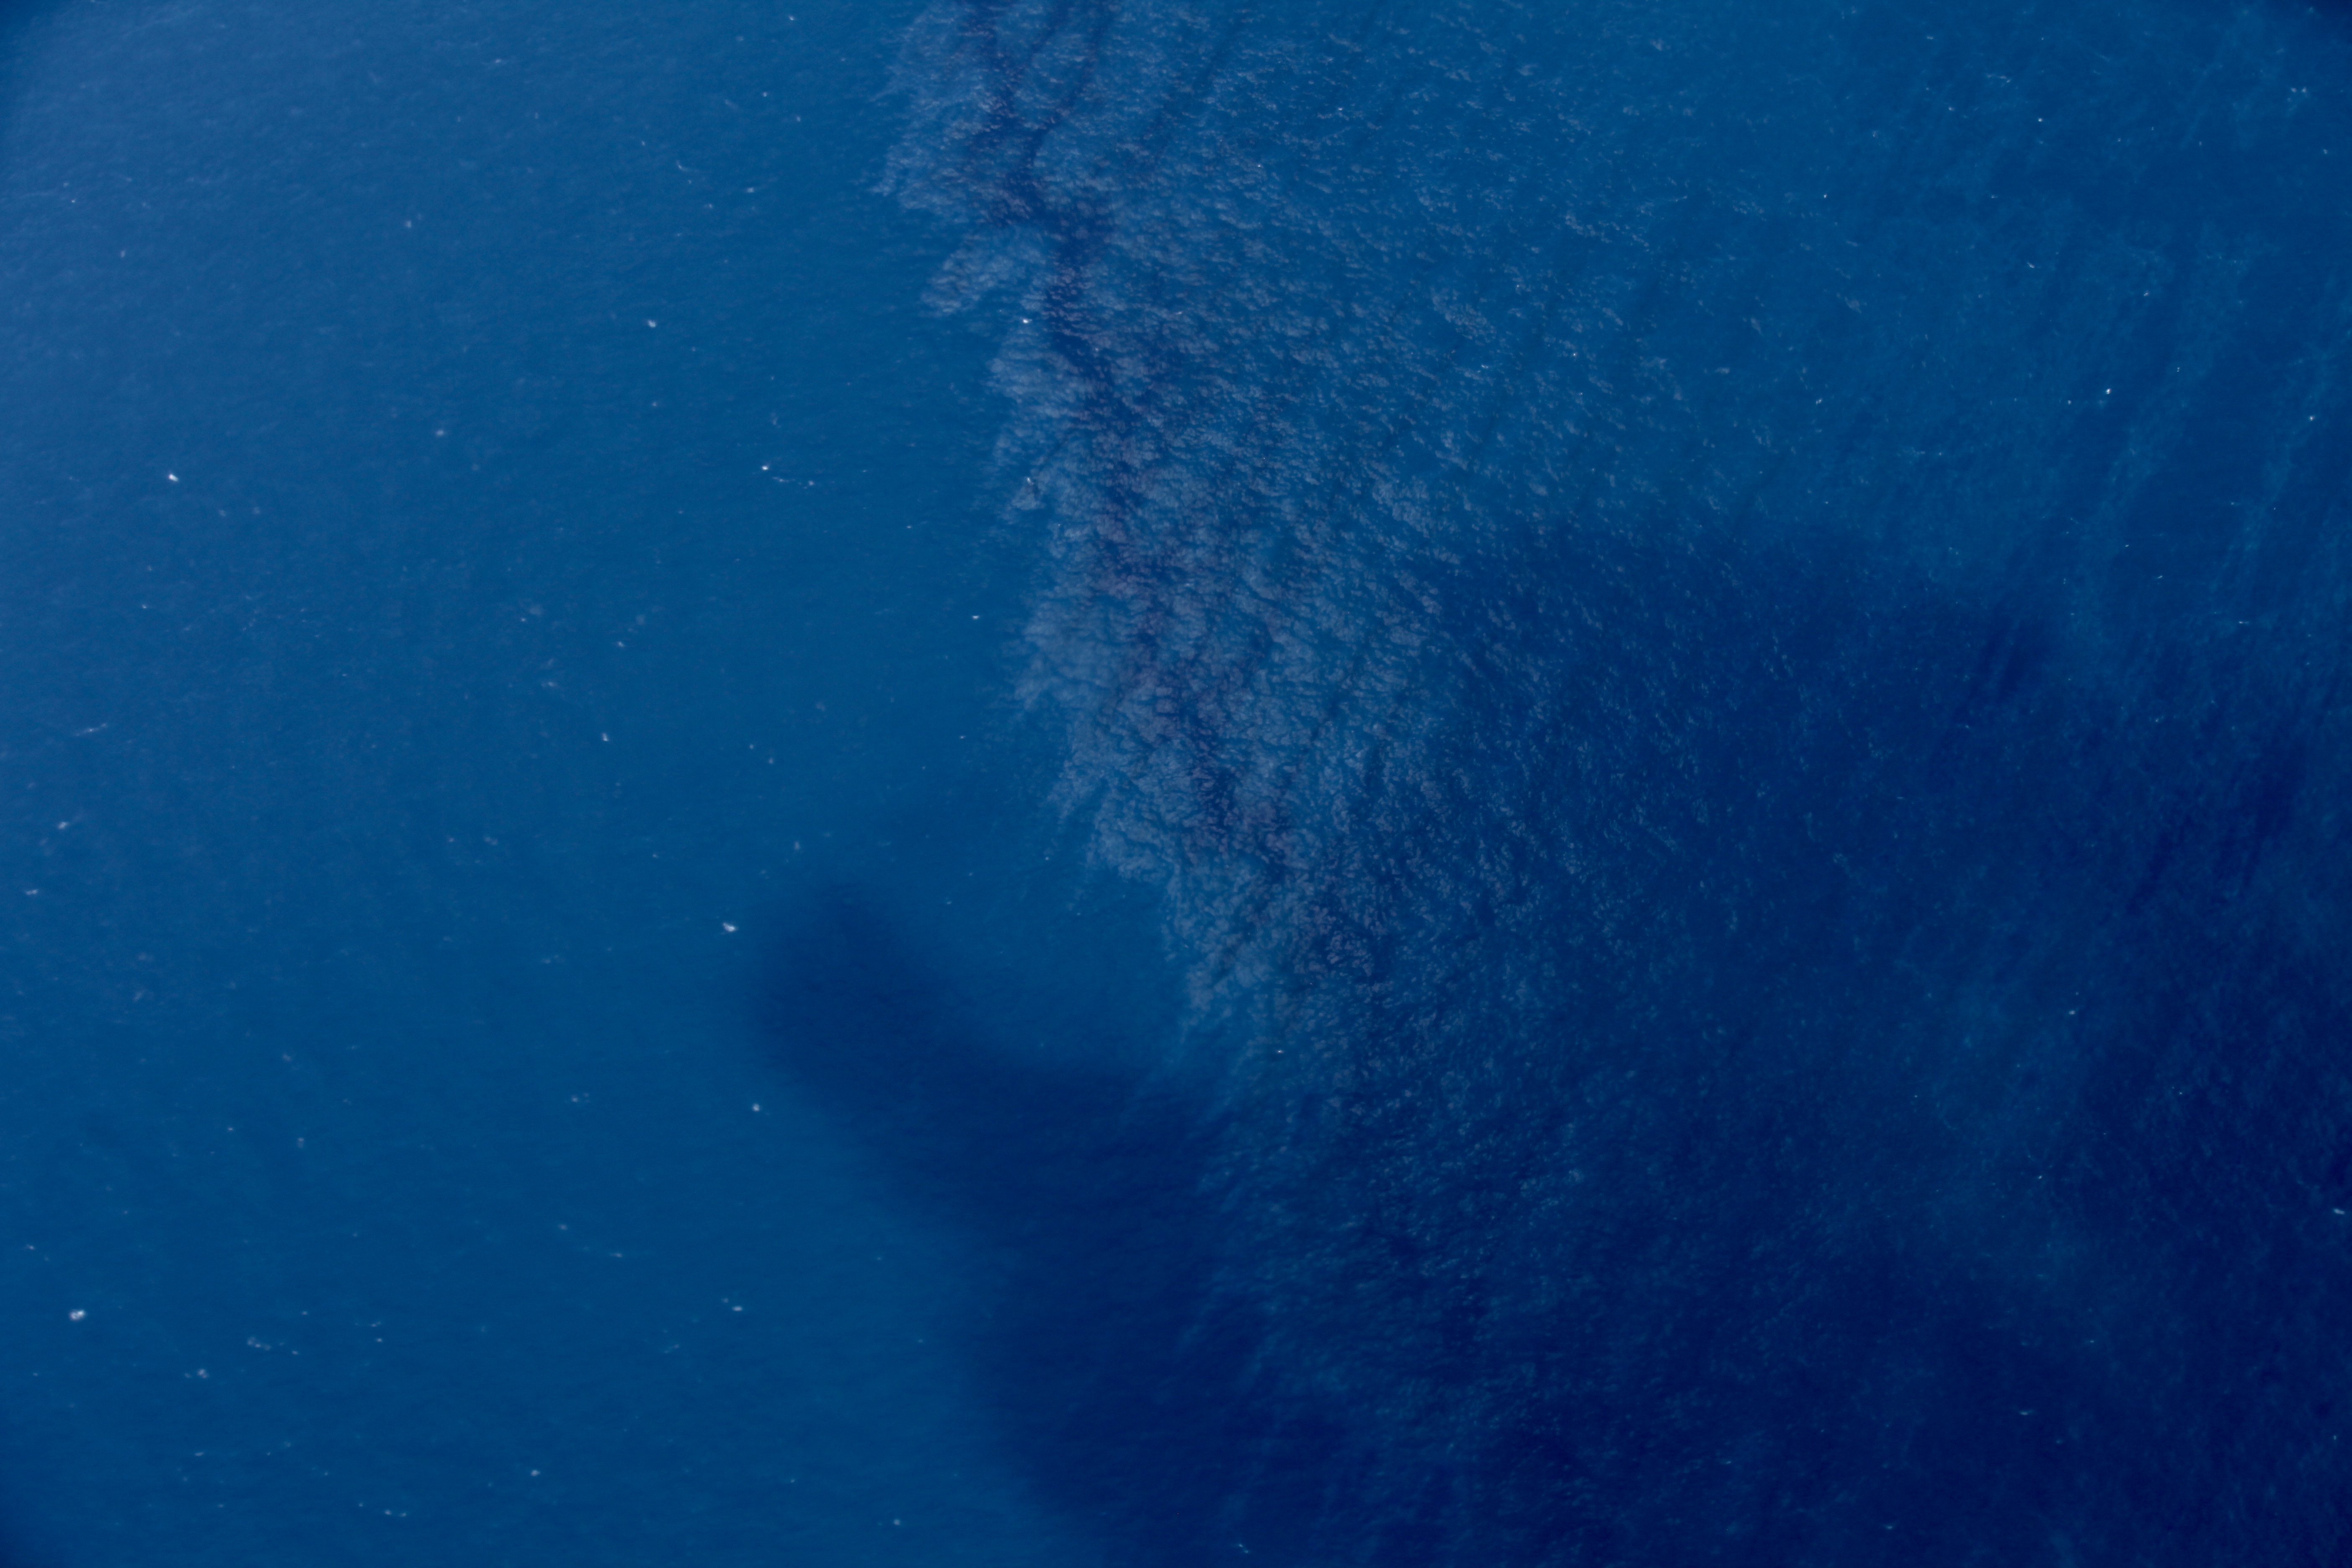 Marée noire en mer de Chine : les scientifiques sont perplexes